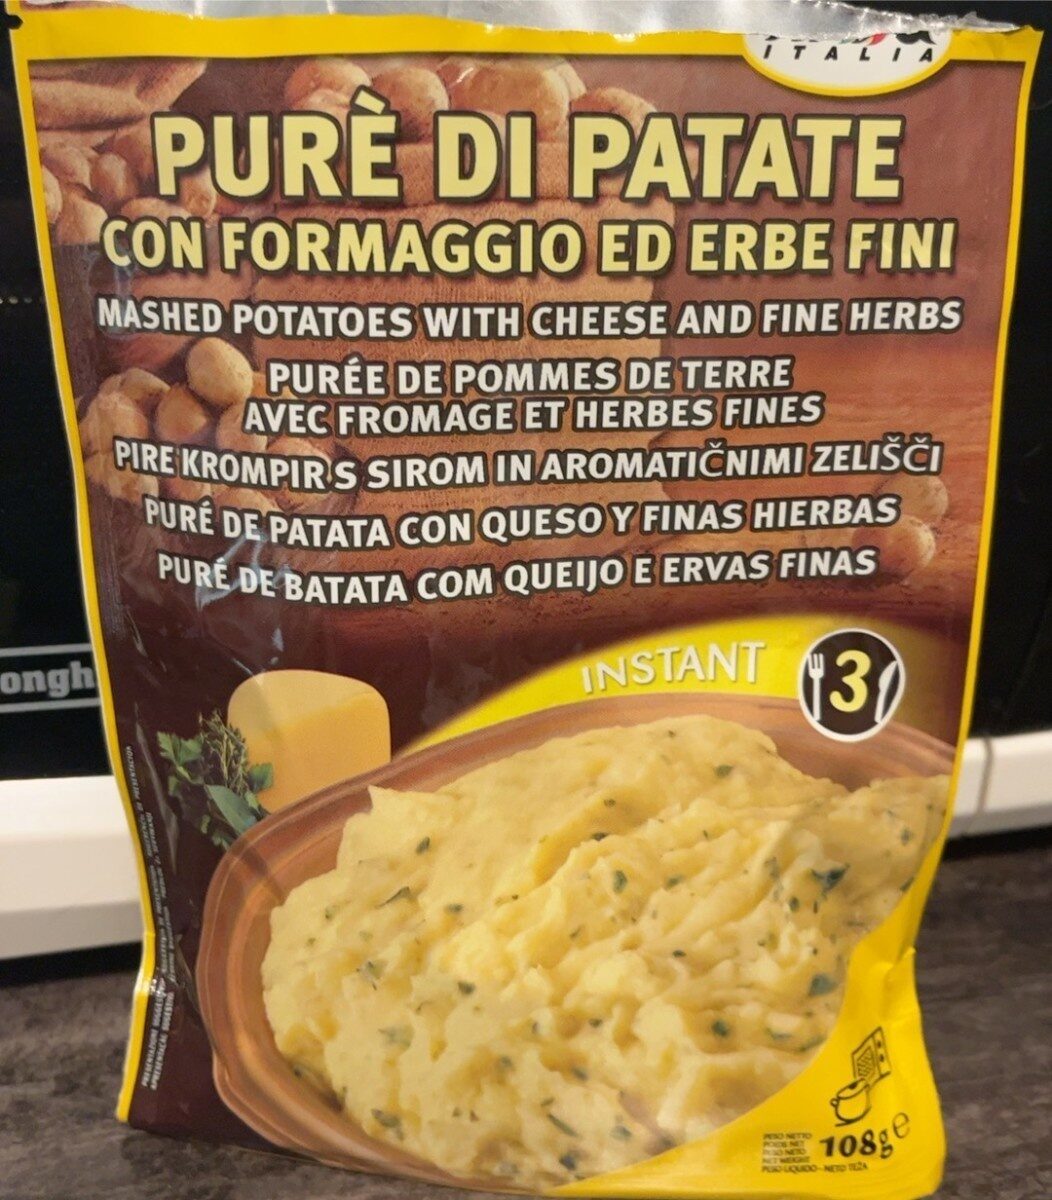 Purè di patate - Product - it